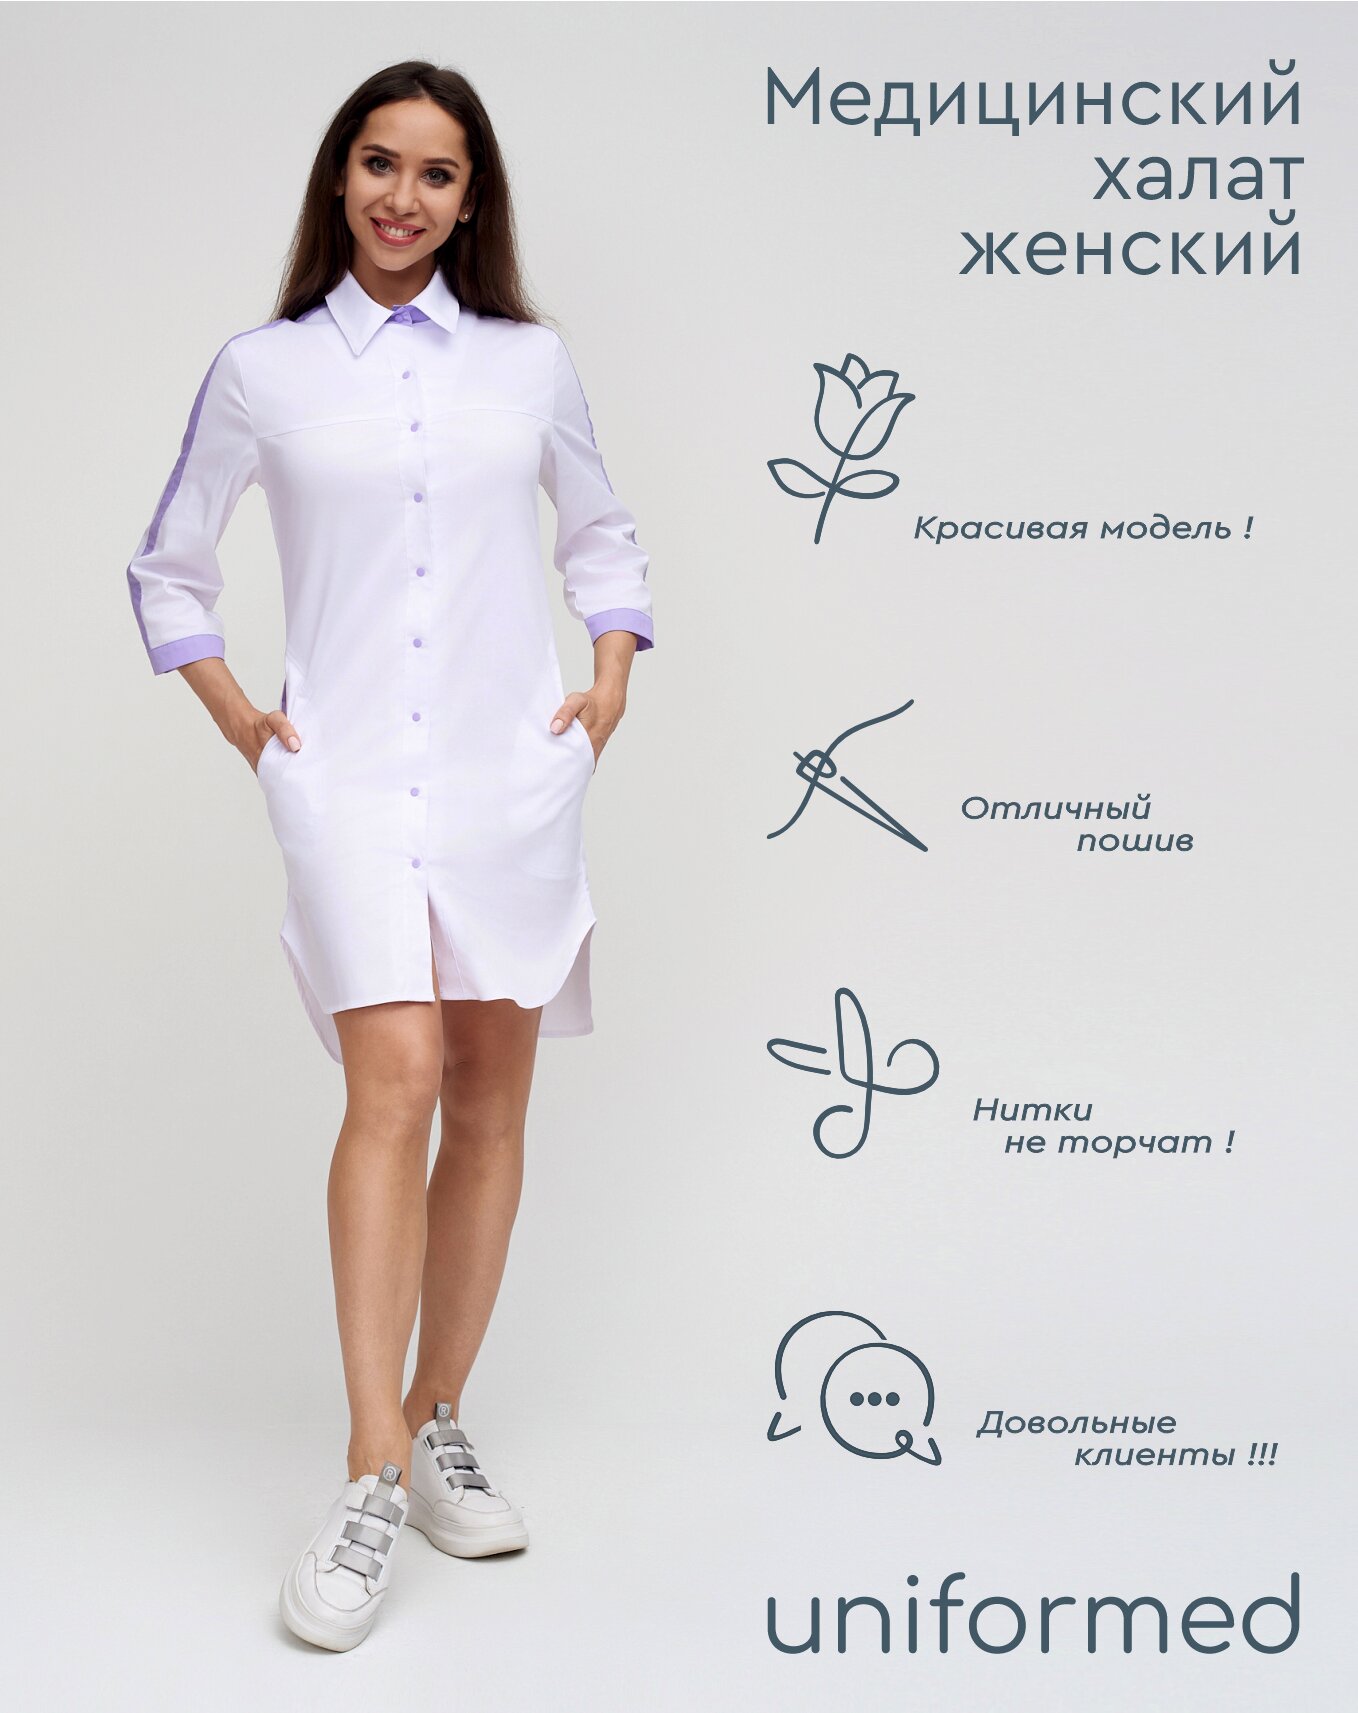 Медицинский женский халат 370.4.3 Uniformed ткань сатори стрейч укороченный рукав 3/4 на кнопках цвет белый отделка лайм рост 170-176 размер 52